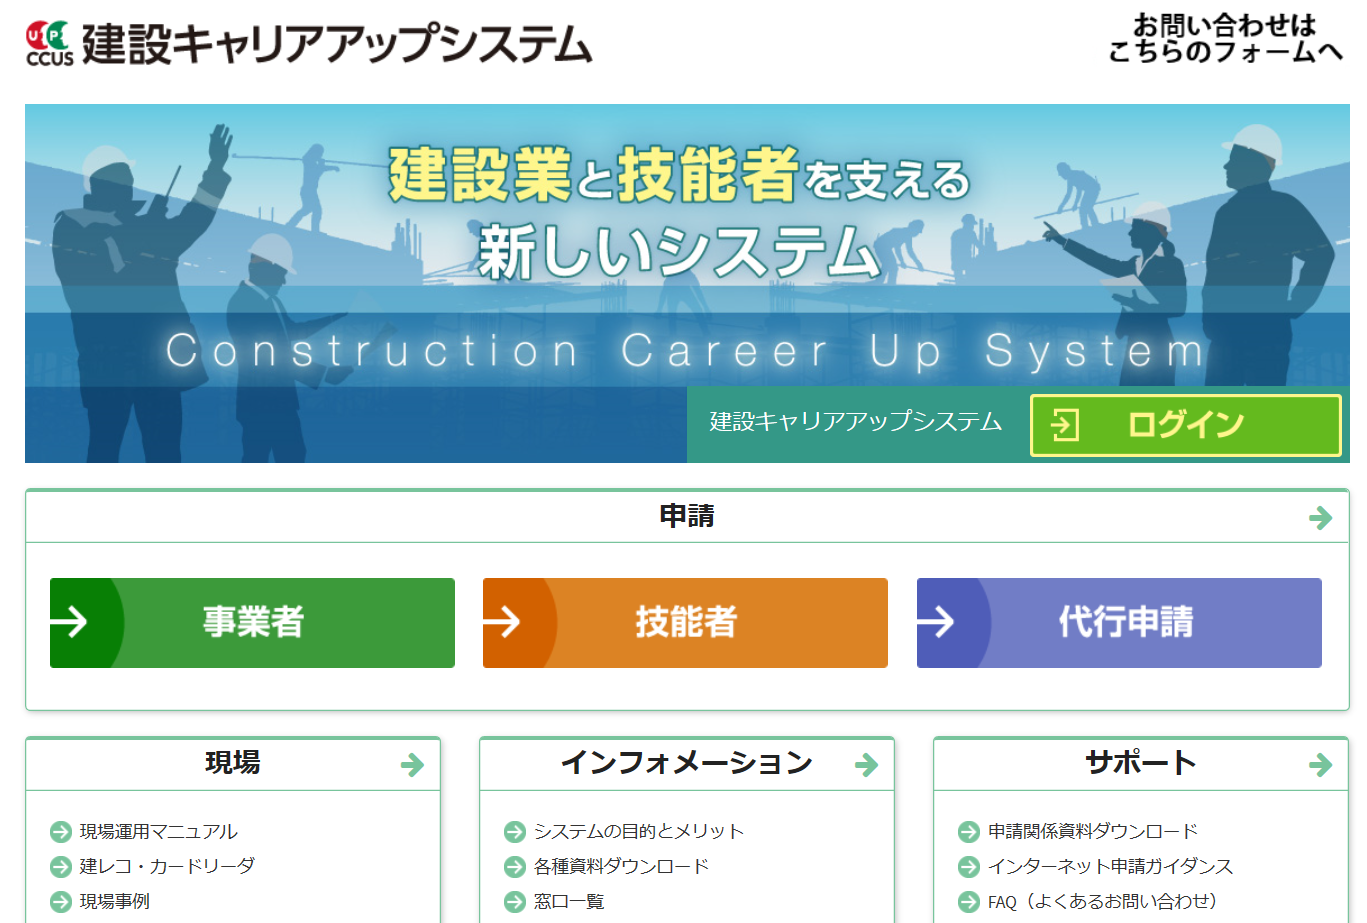 建設キャリアアップシステムと外国人雇用